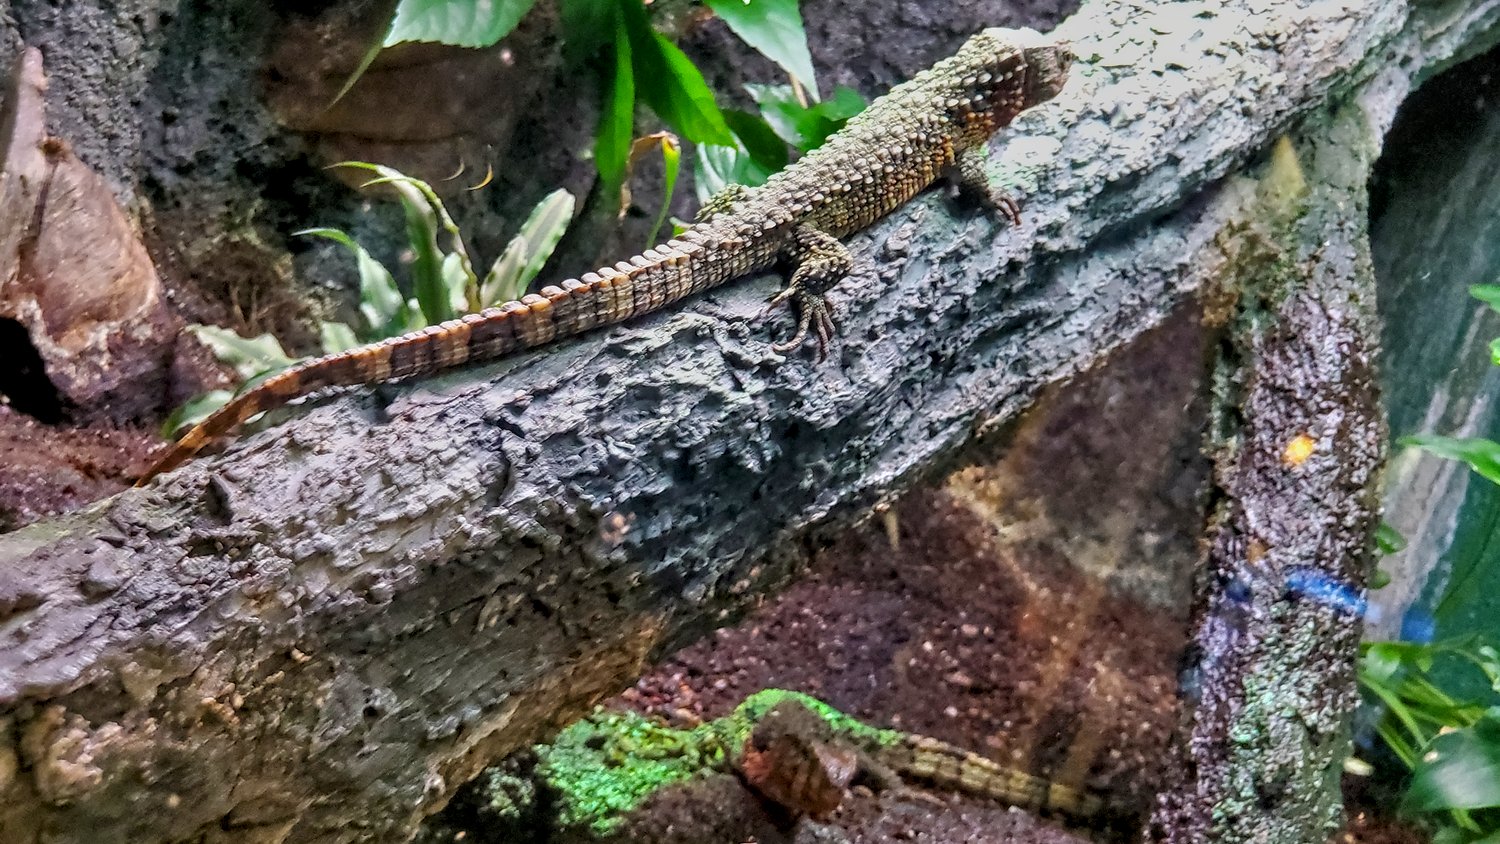 Reptiles at Shedd Aquarium.